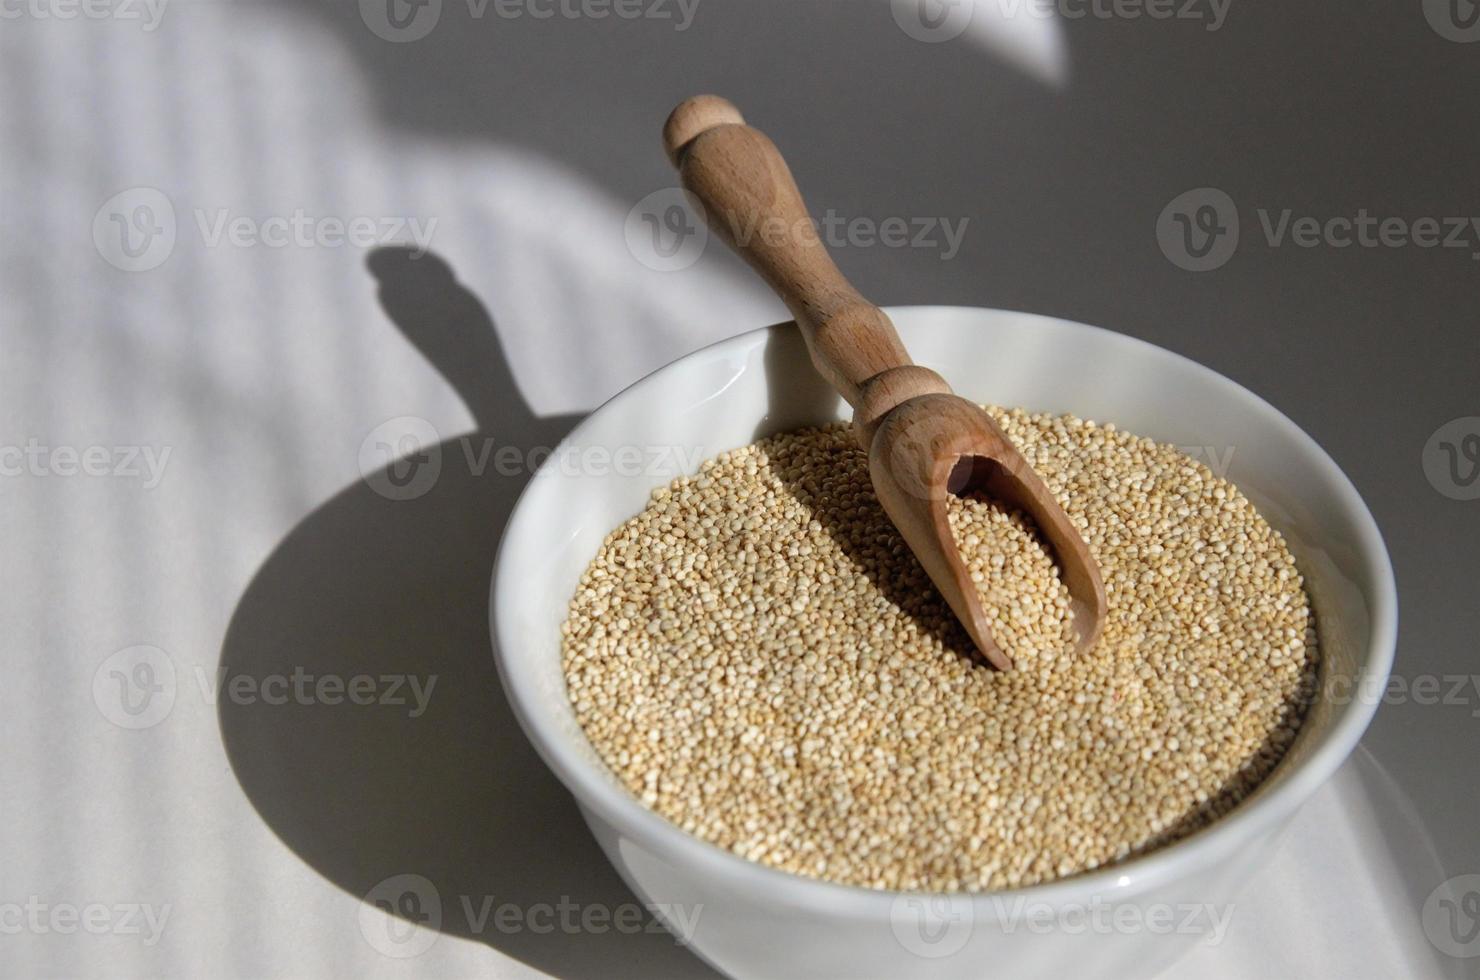 semilla de quinua para una alimentación saludable en un plato blanco con una cuchara. foto de alta calidad